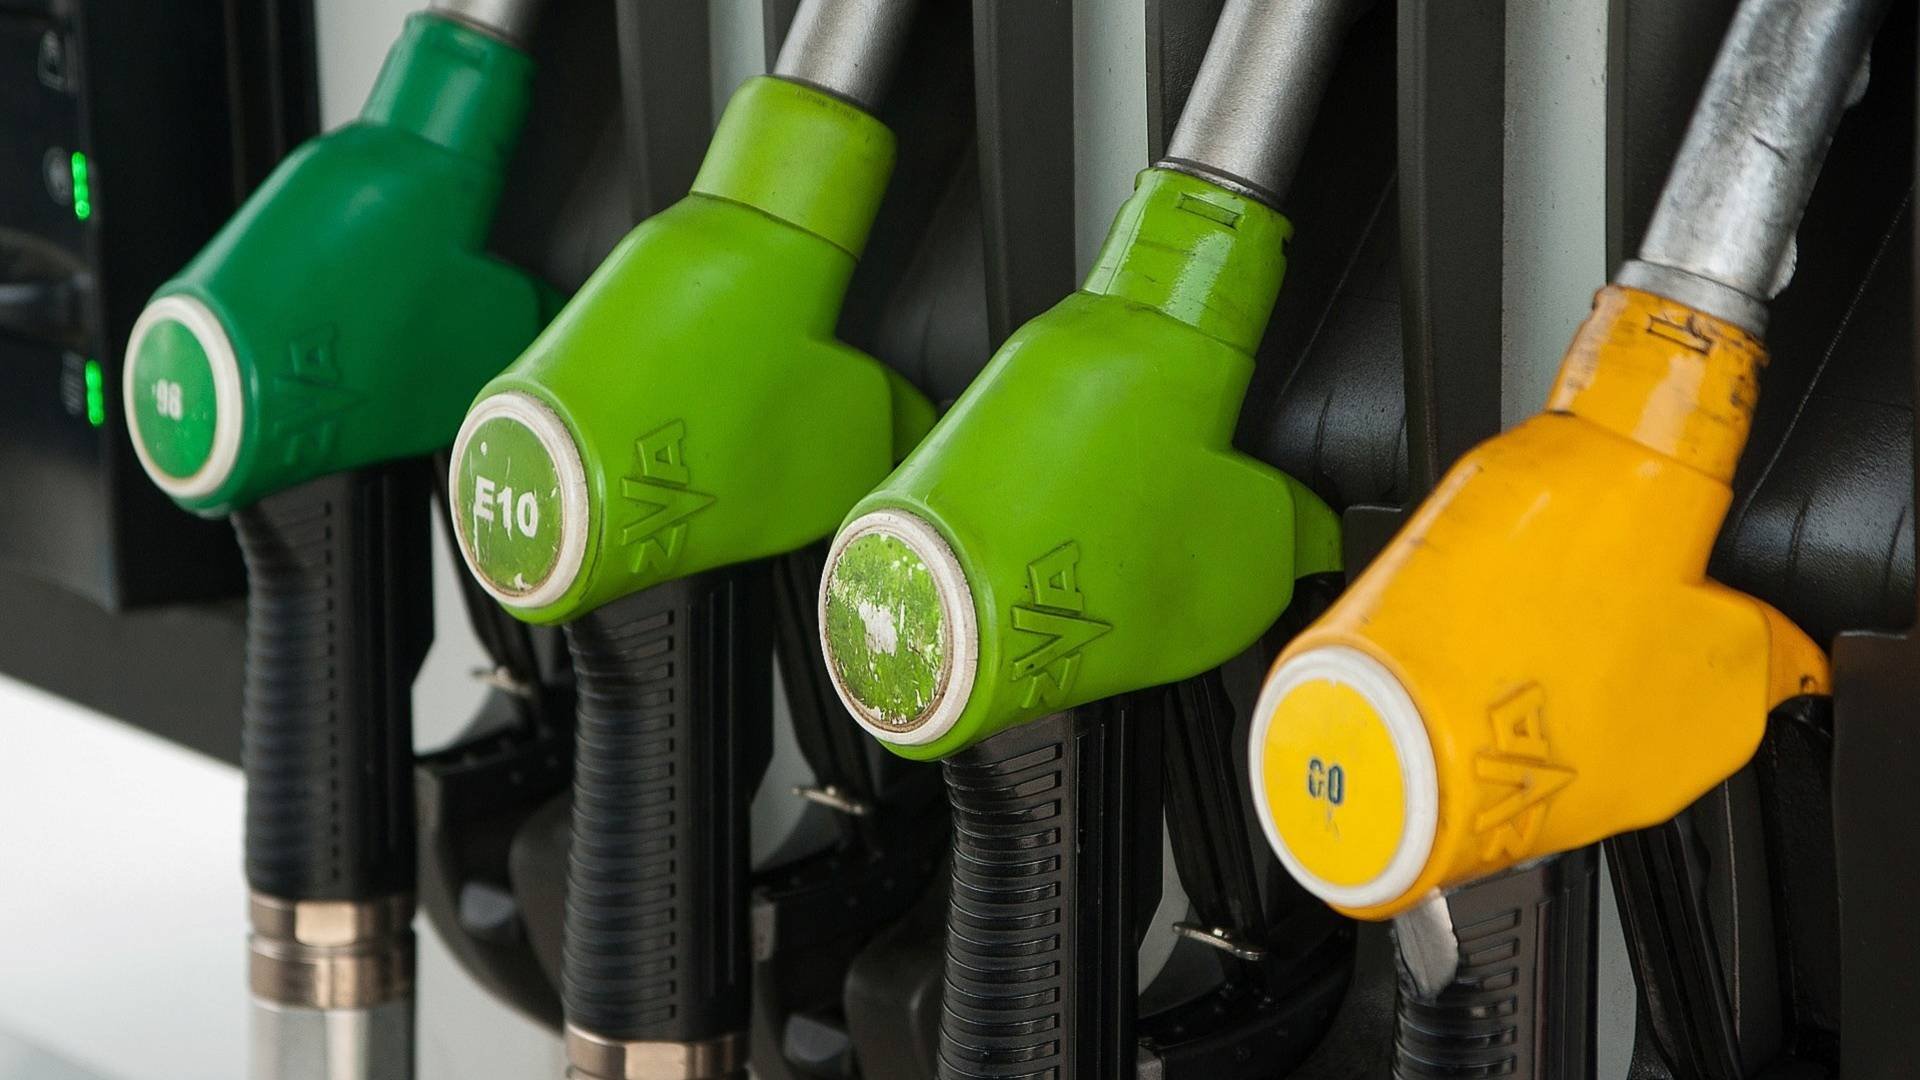 Prezzi dei carburanti sempre più in alto: benzina e gasolio sopra 1,80 euro